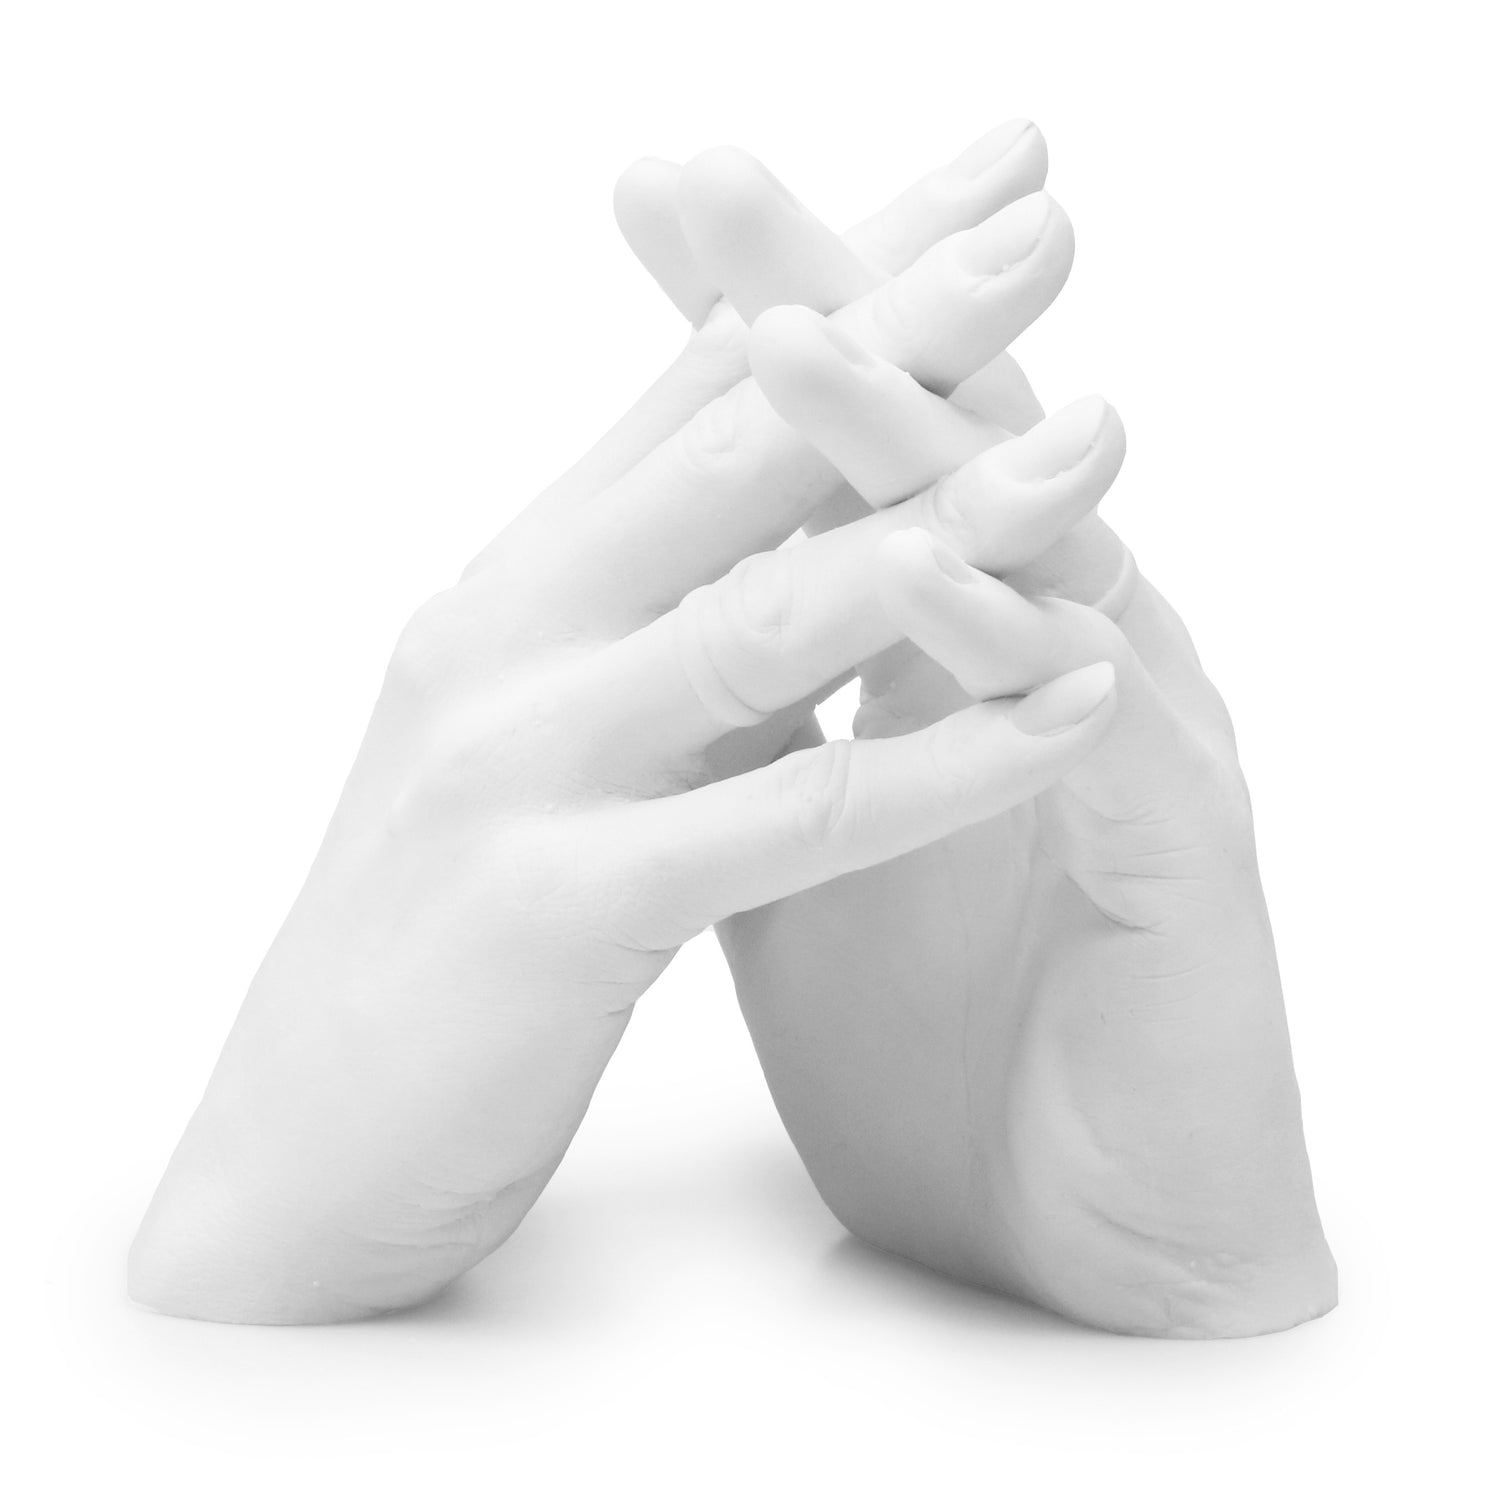 Kits de moulage « pour Famille et Mariage » DUO – 3D Hand Design